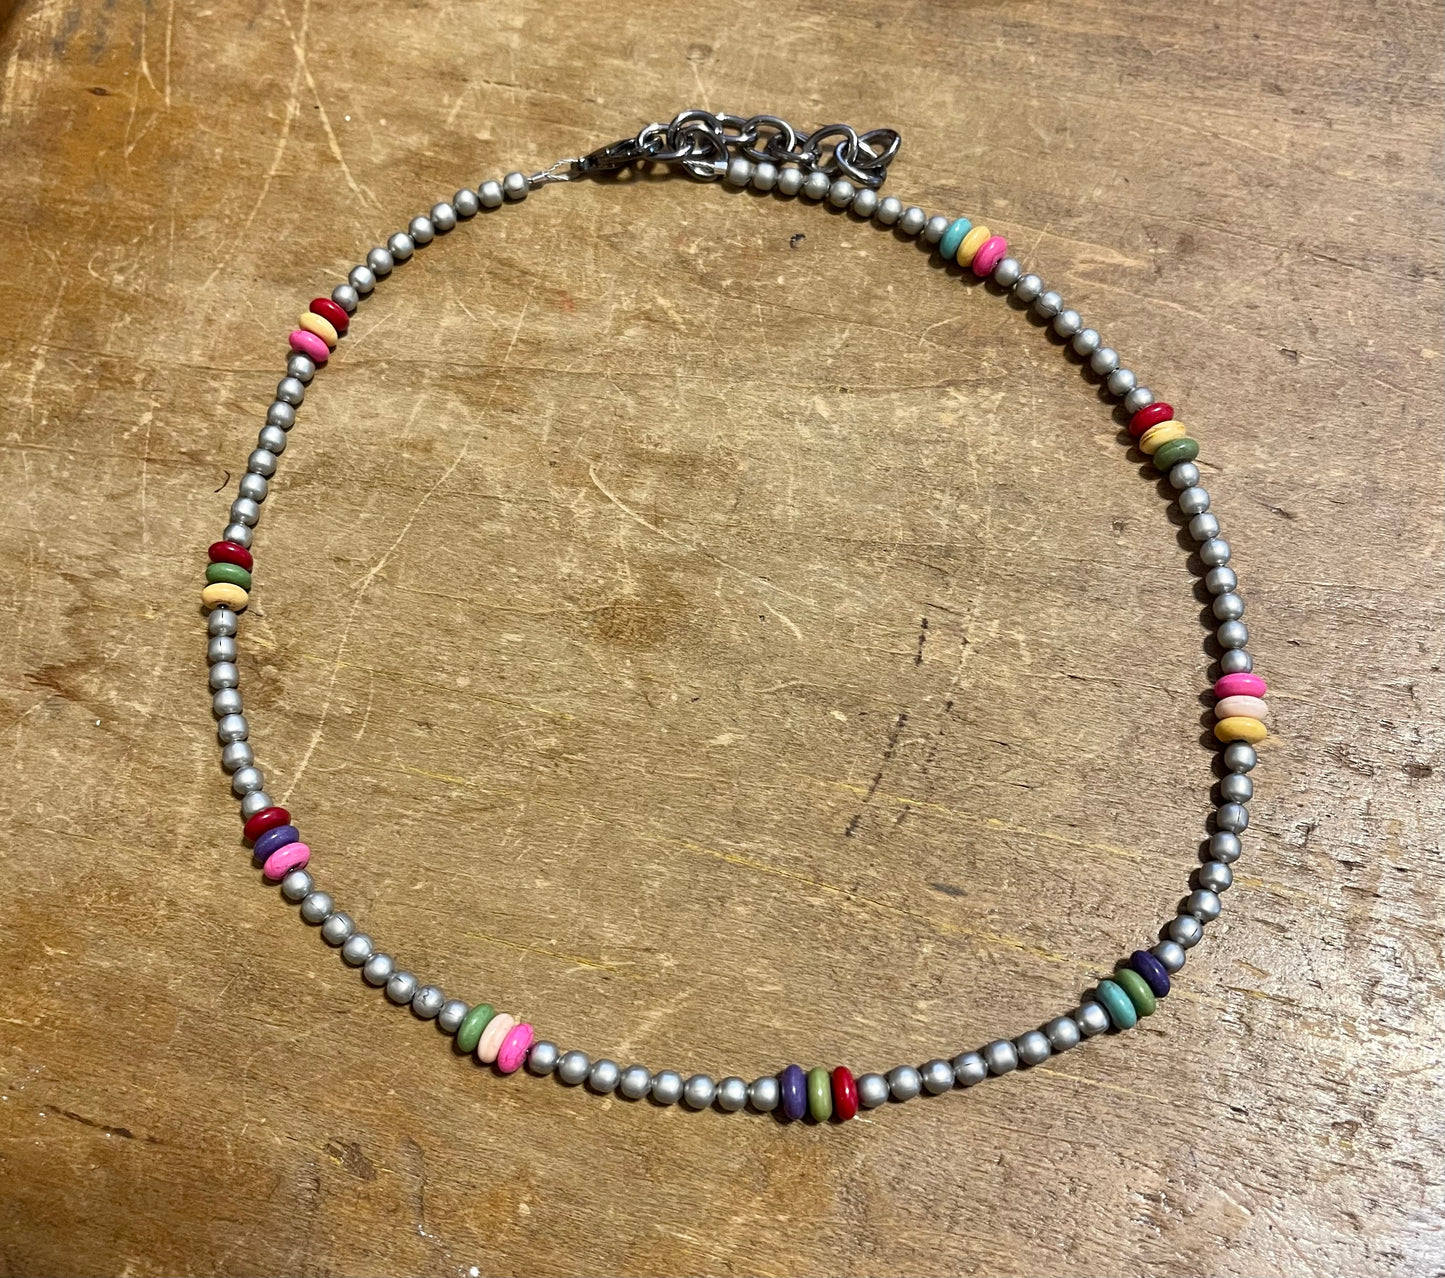 Multi-Color Stone Necklace